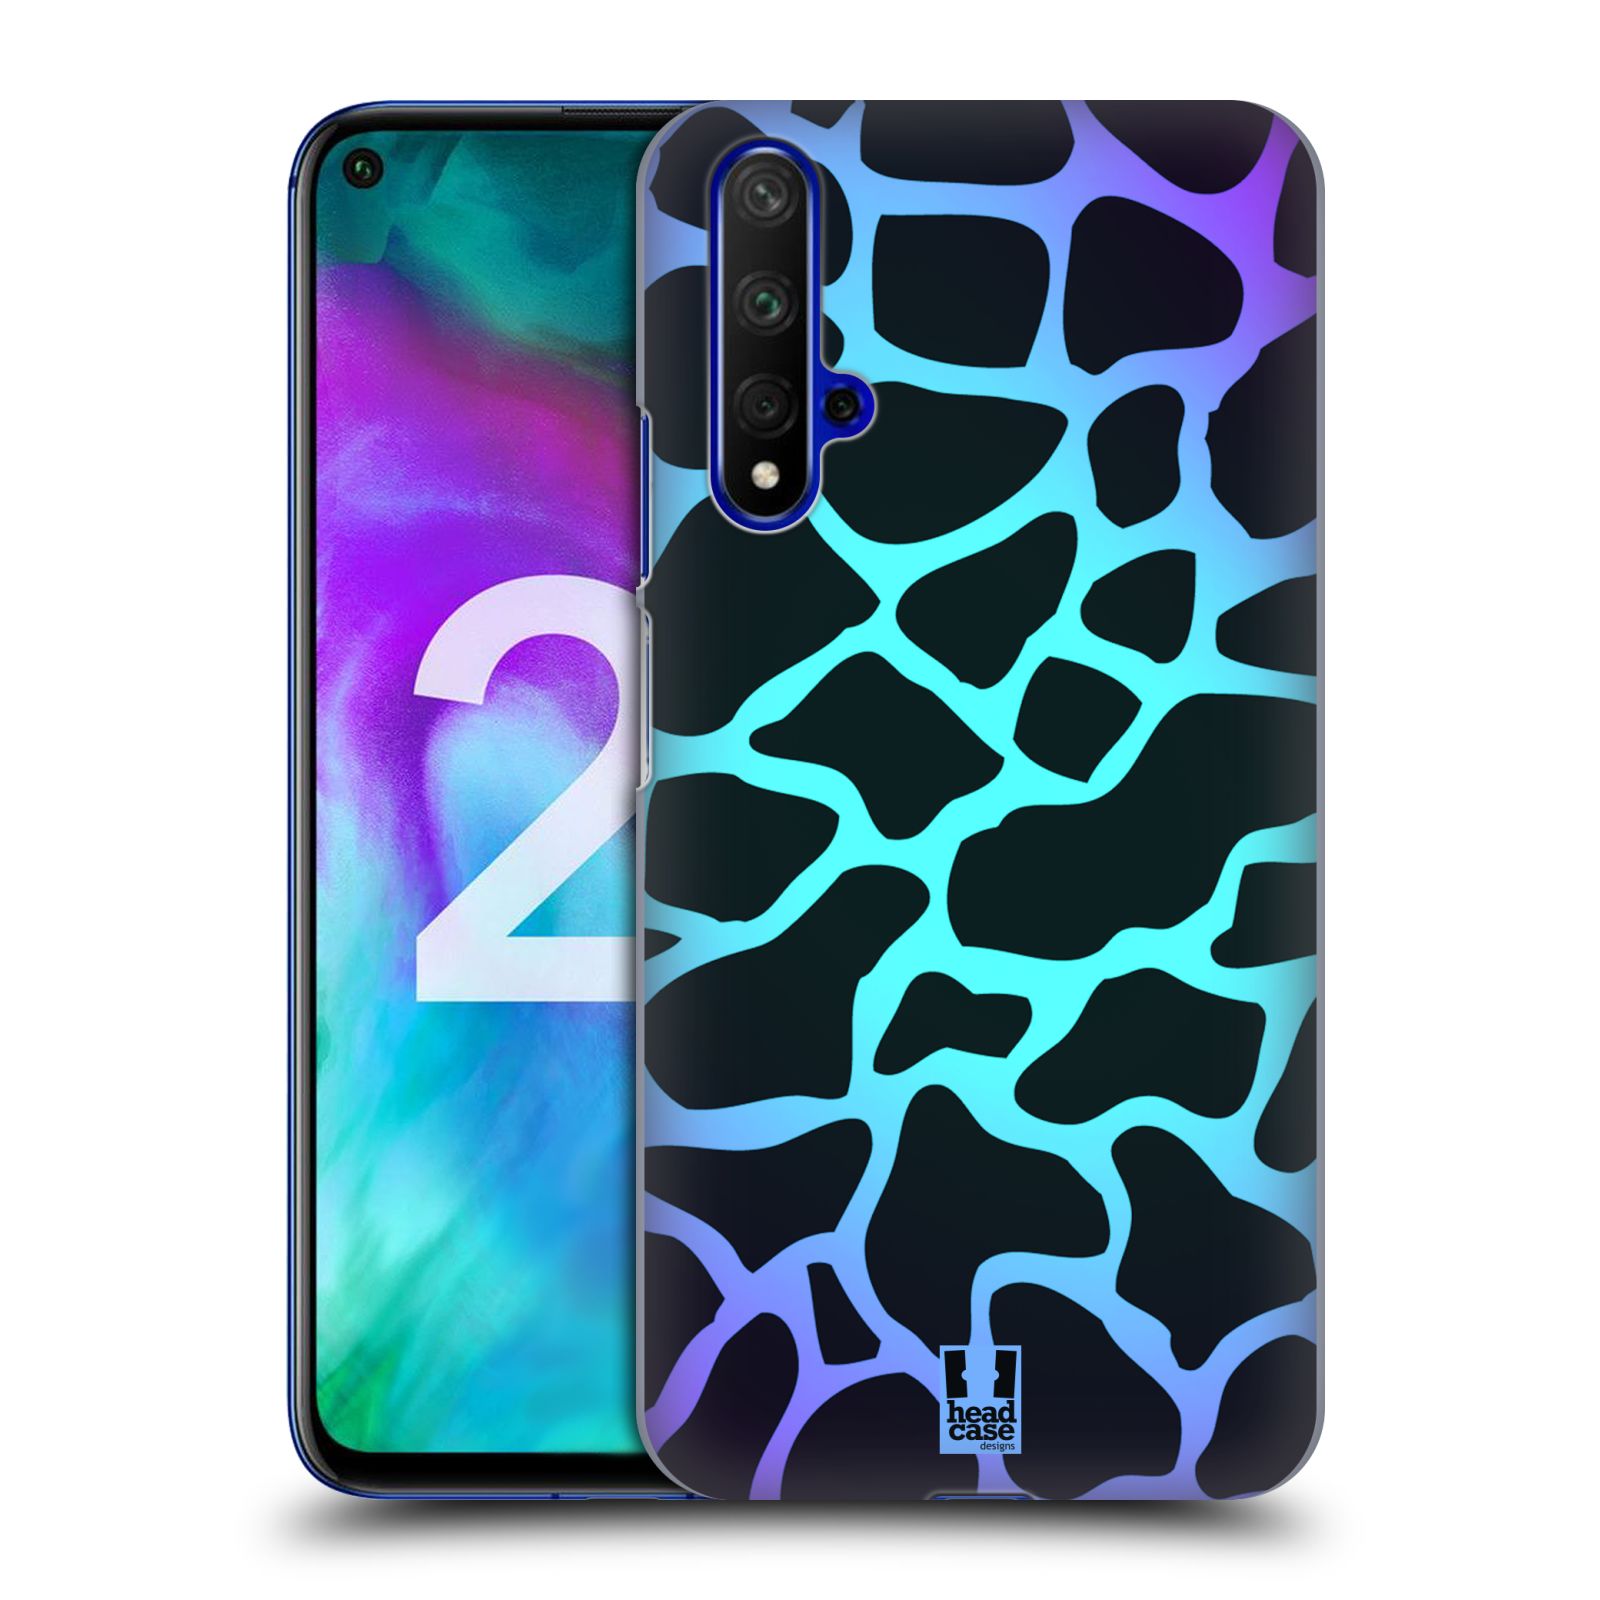 Pouzdro na mobil Honor 20 - HEAD CASE - vzor Divočina zvíře tyrkysová žirafa magický vzor